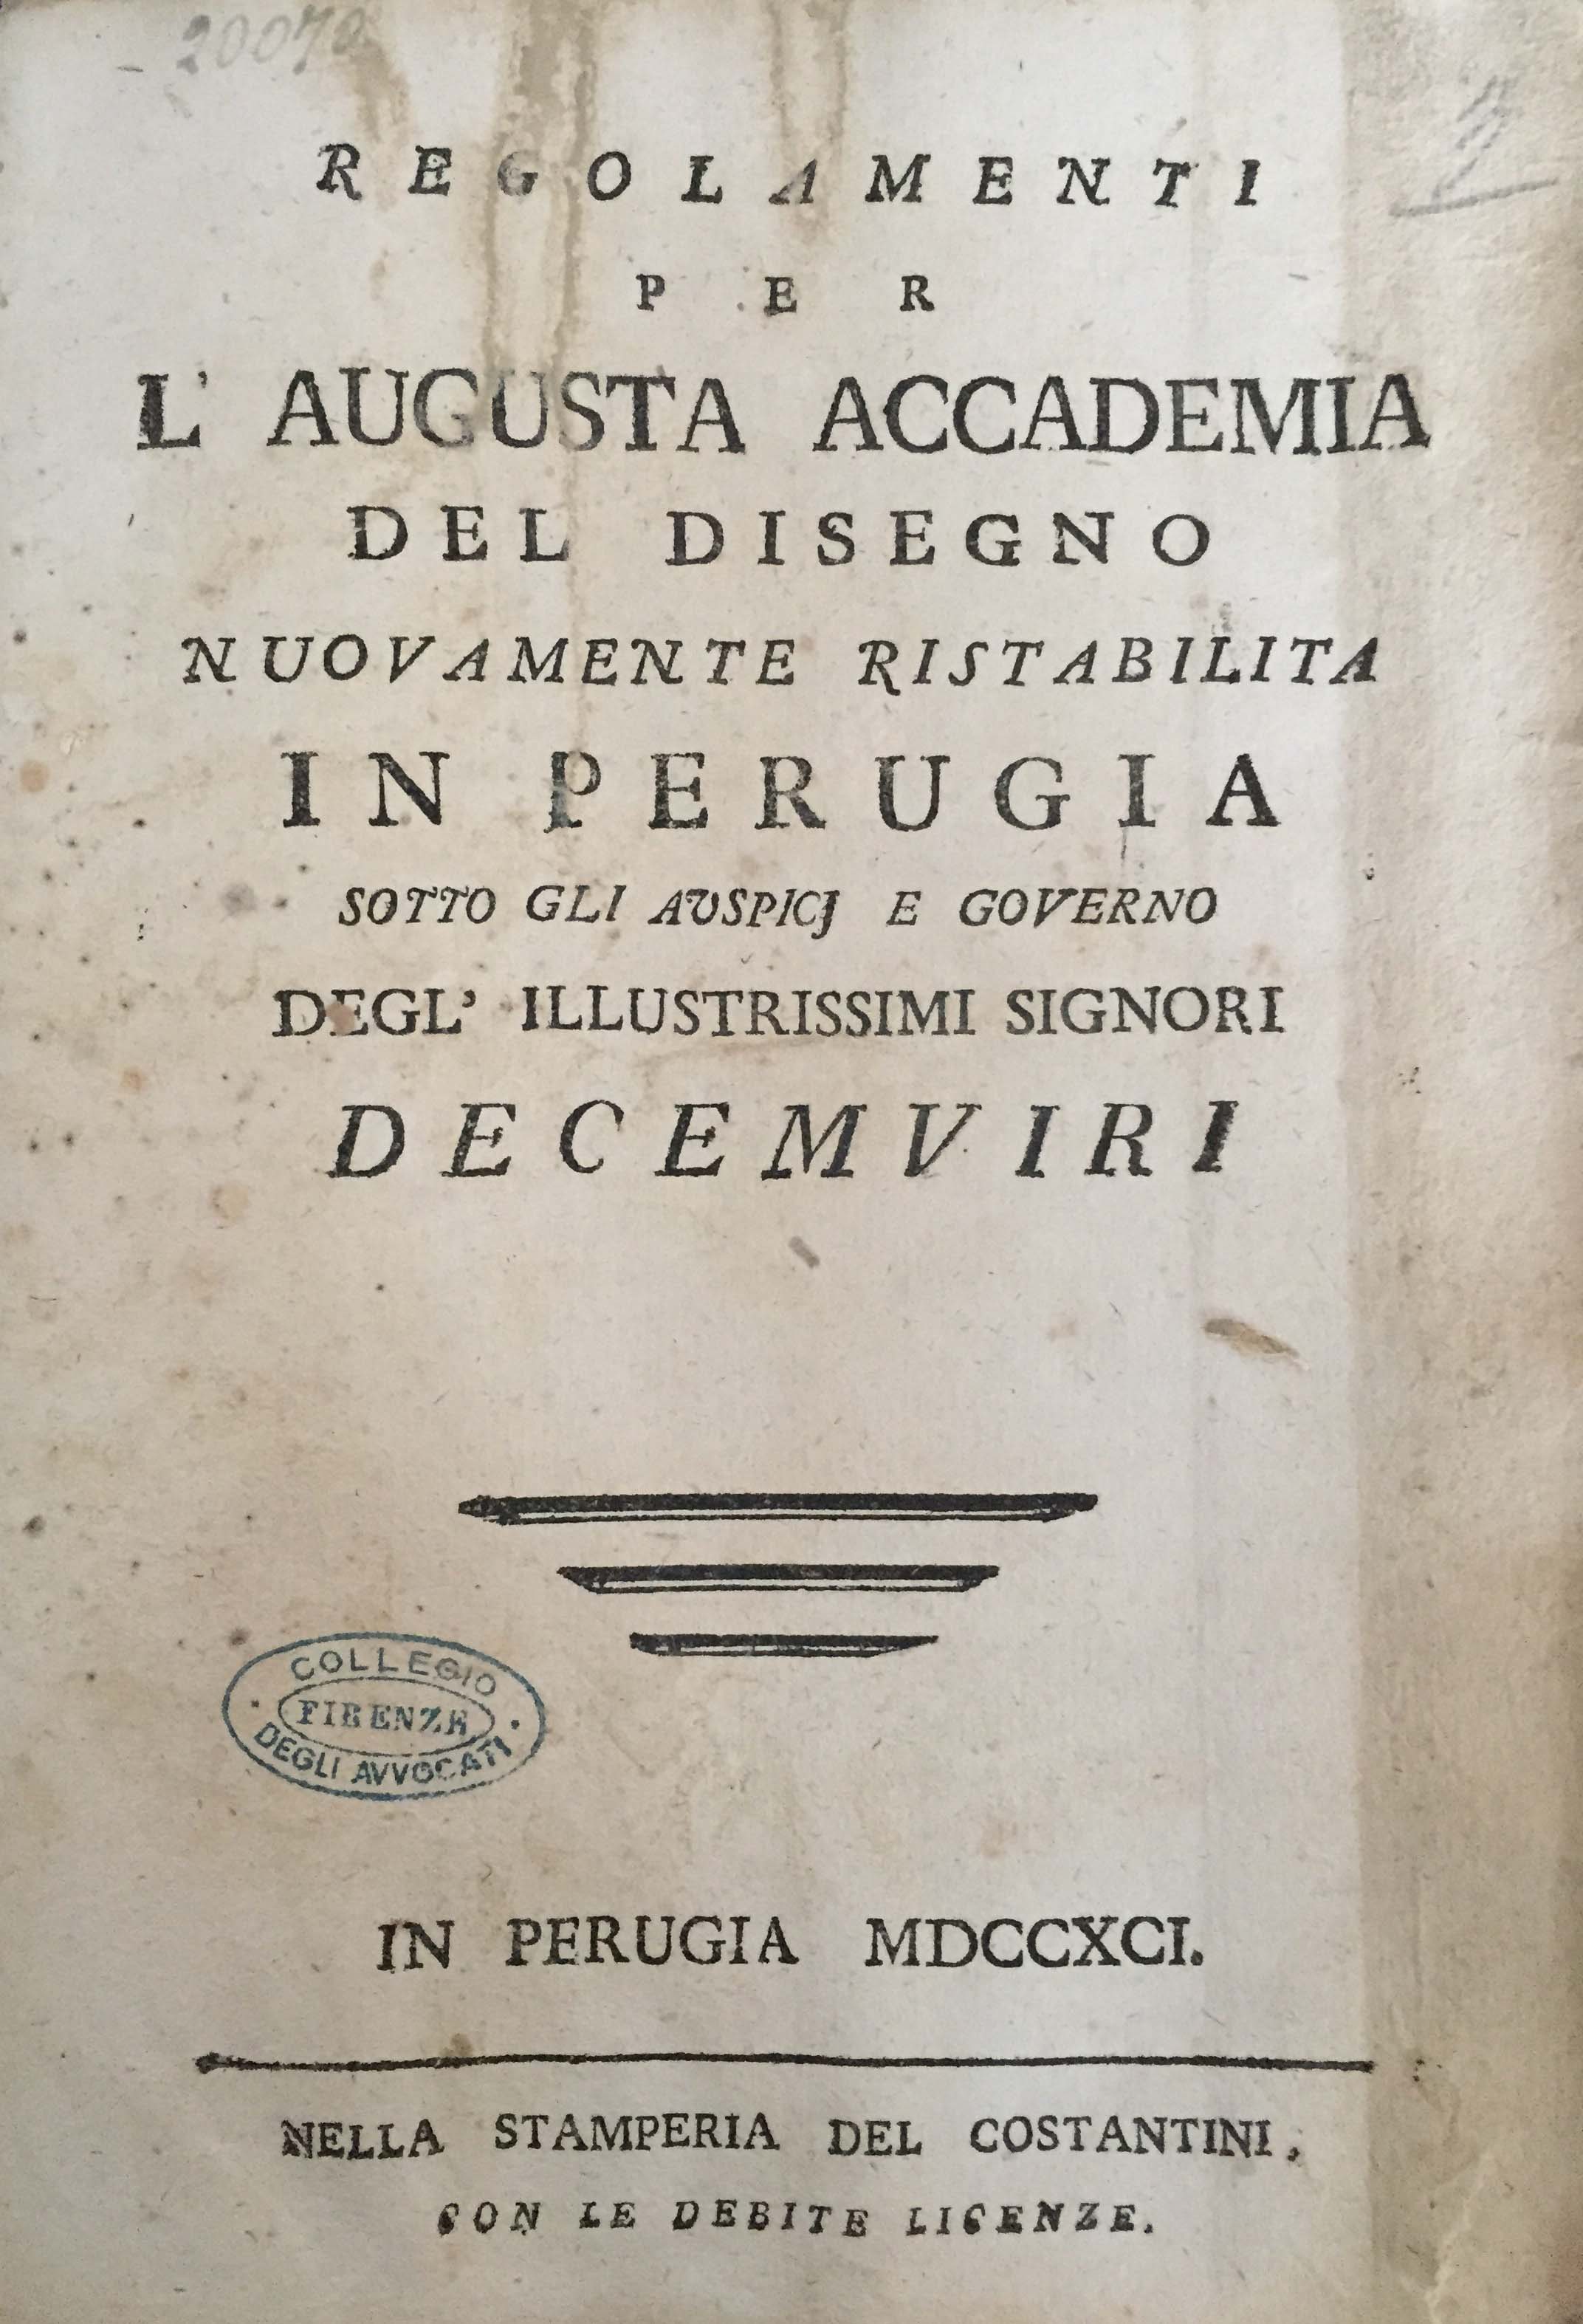 Regolamenti per l’augusta accademia del disegno nuovamente ristabilita in Perugia